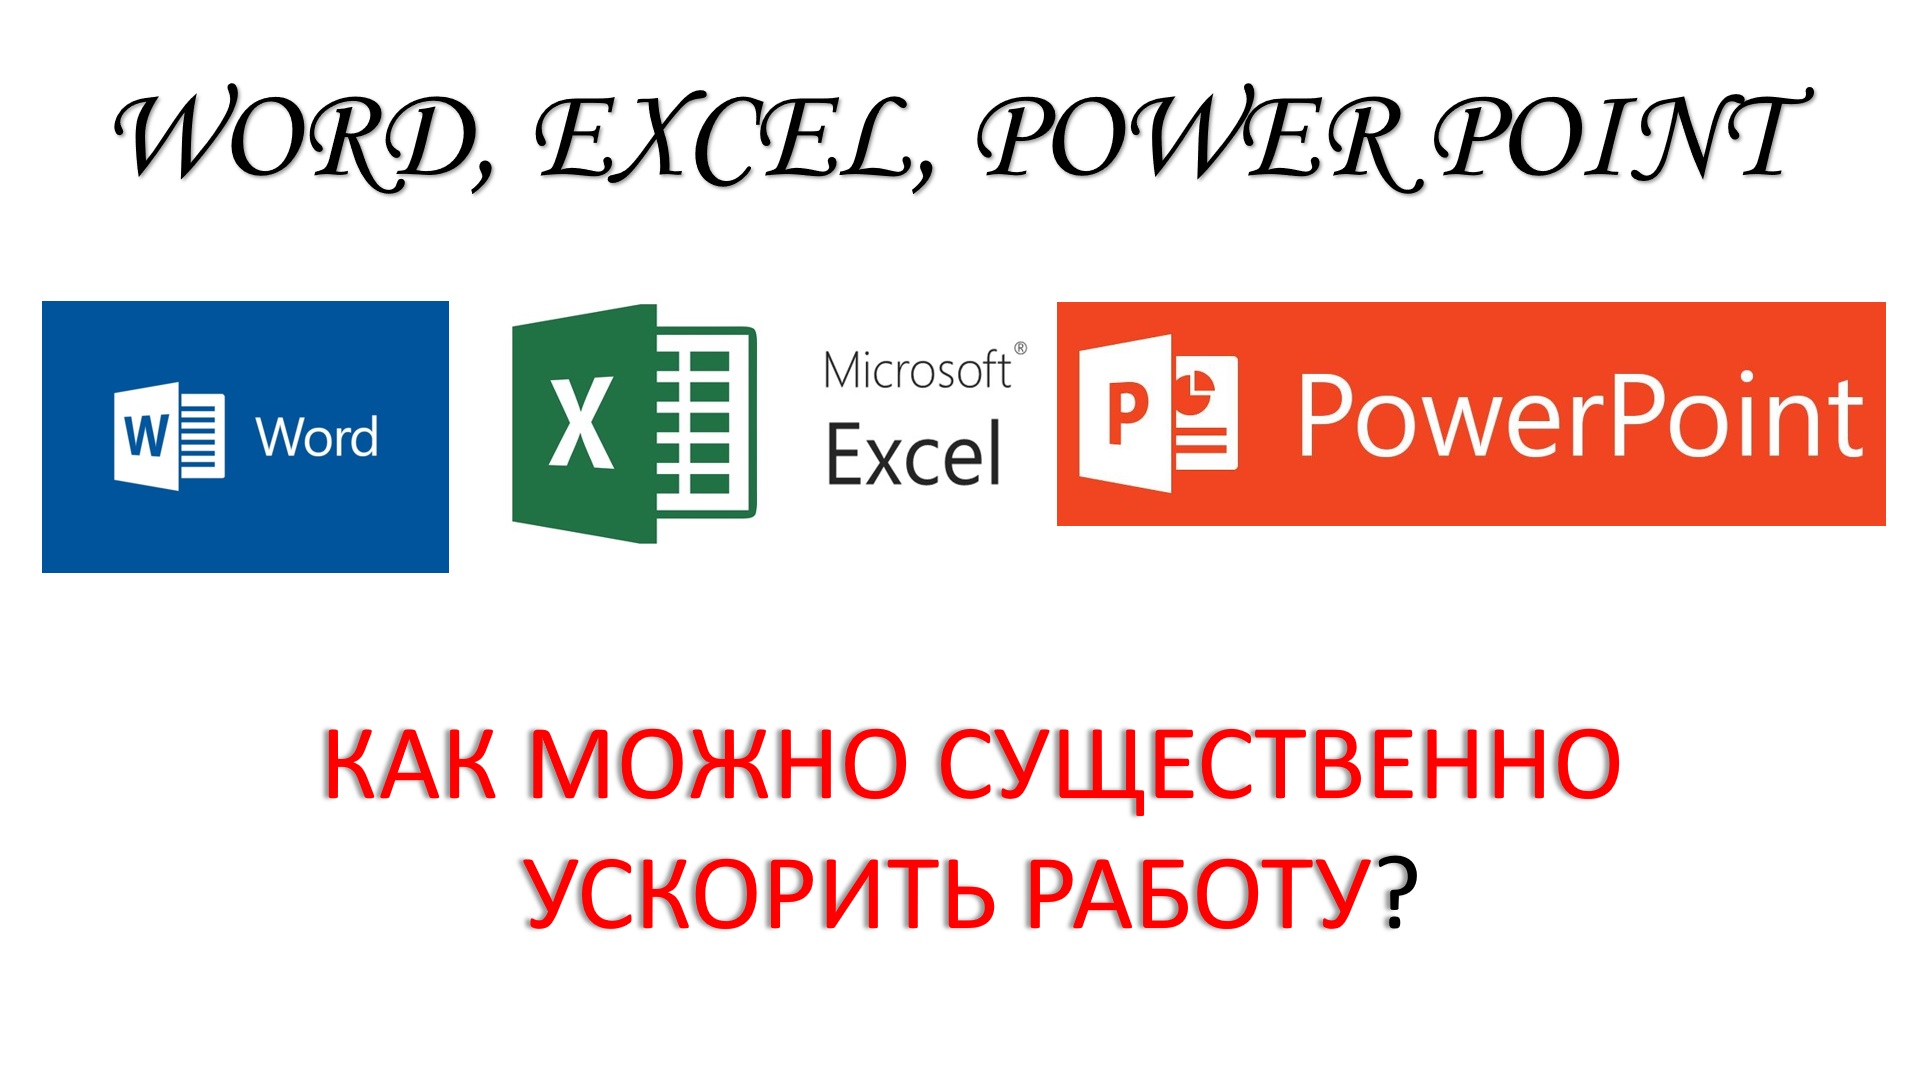 Word. Excel. PowerPoint. Как можно ускорить работу?